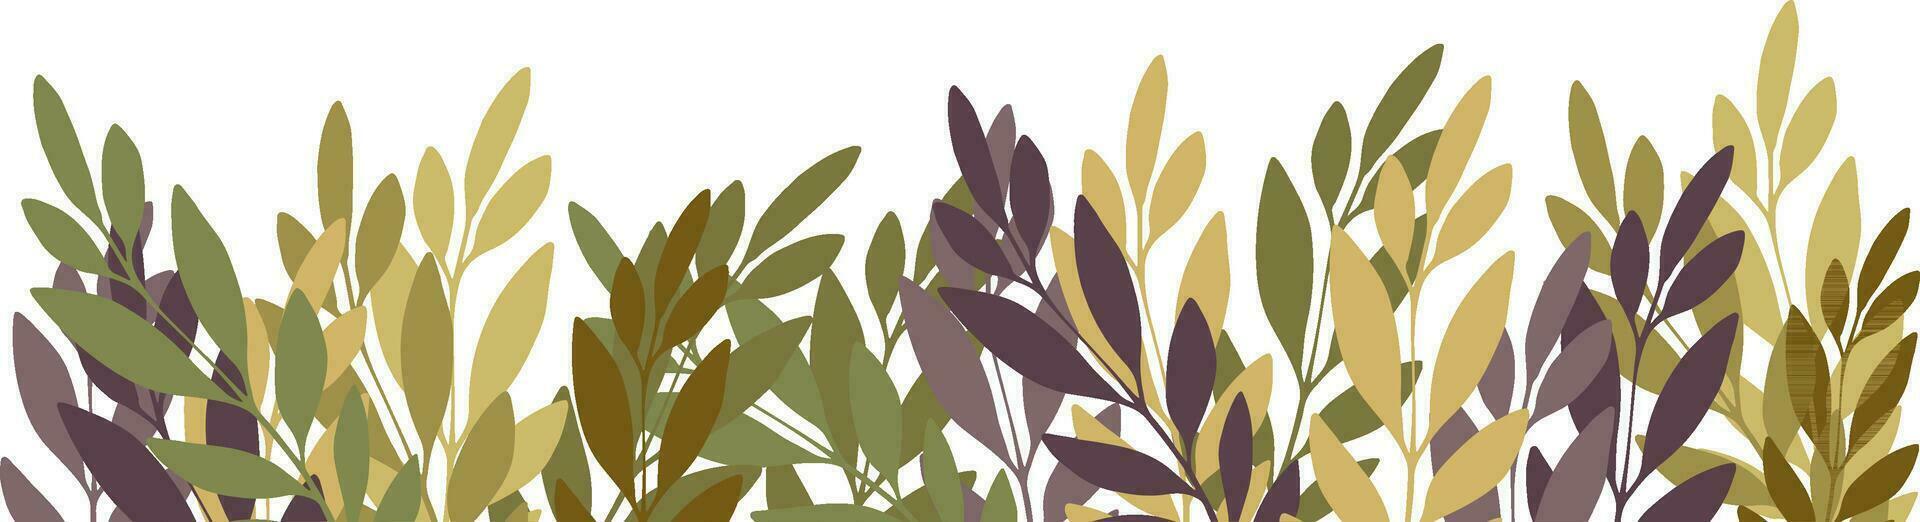 Blumen- Vorlage mit abstrakt Olive Geäst auf ein Weiß Hintergrund. Blumen- Vektor Ornament zum Postkarten, Textilien, Banner.